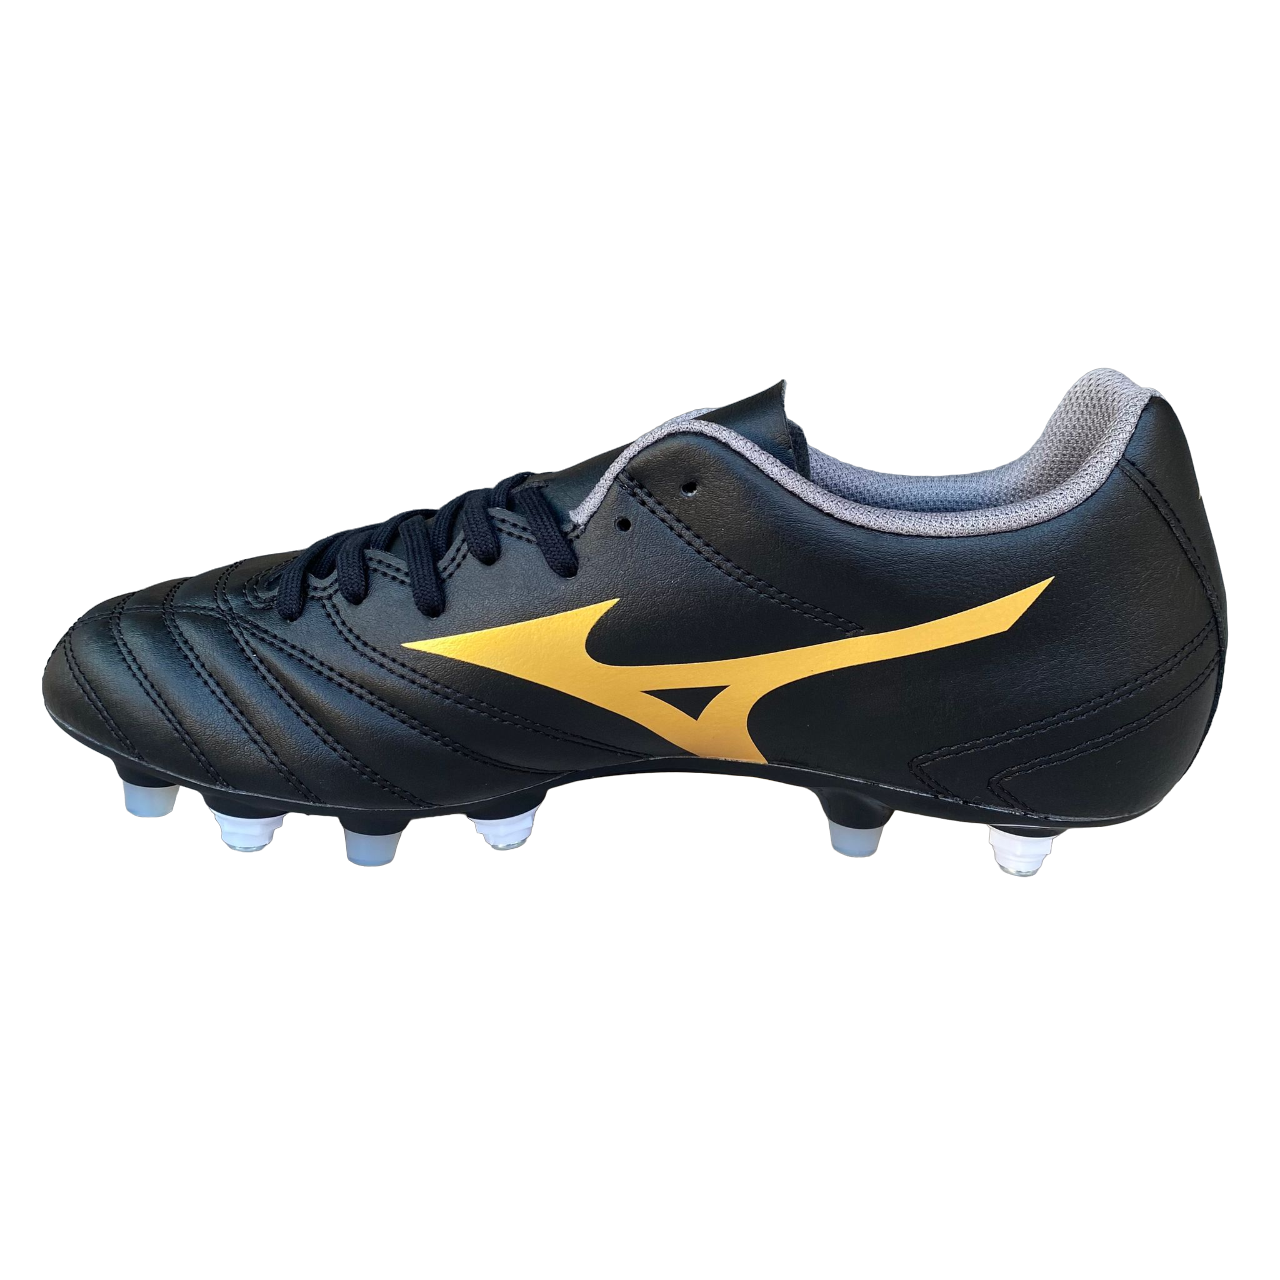 Mizuno scarpa da calcio da uomo Monarcida Neo II Select Mix P1GC232550 nero-oro